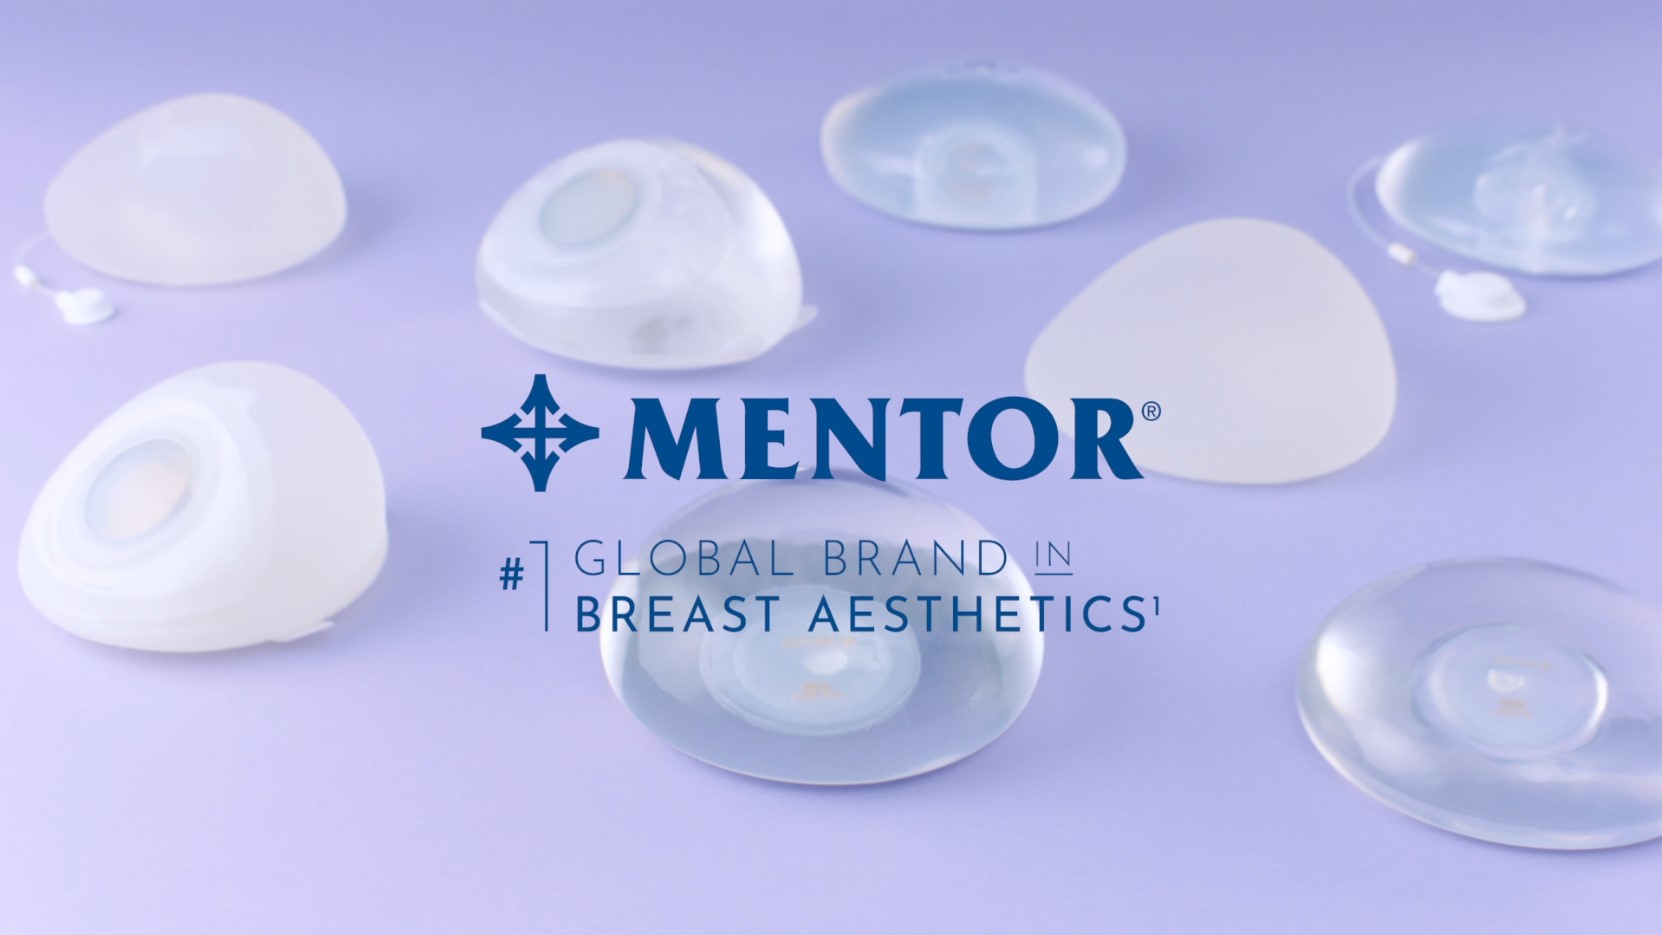 Imagefilm zum Thema Brustvergrößerung mit Implantaten der Firma Mentor.